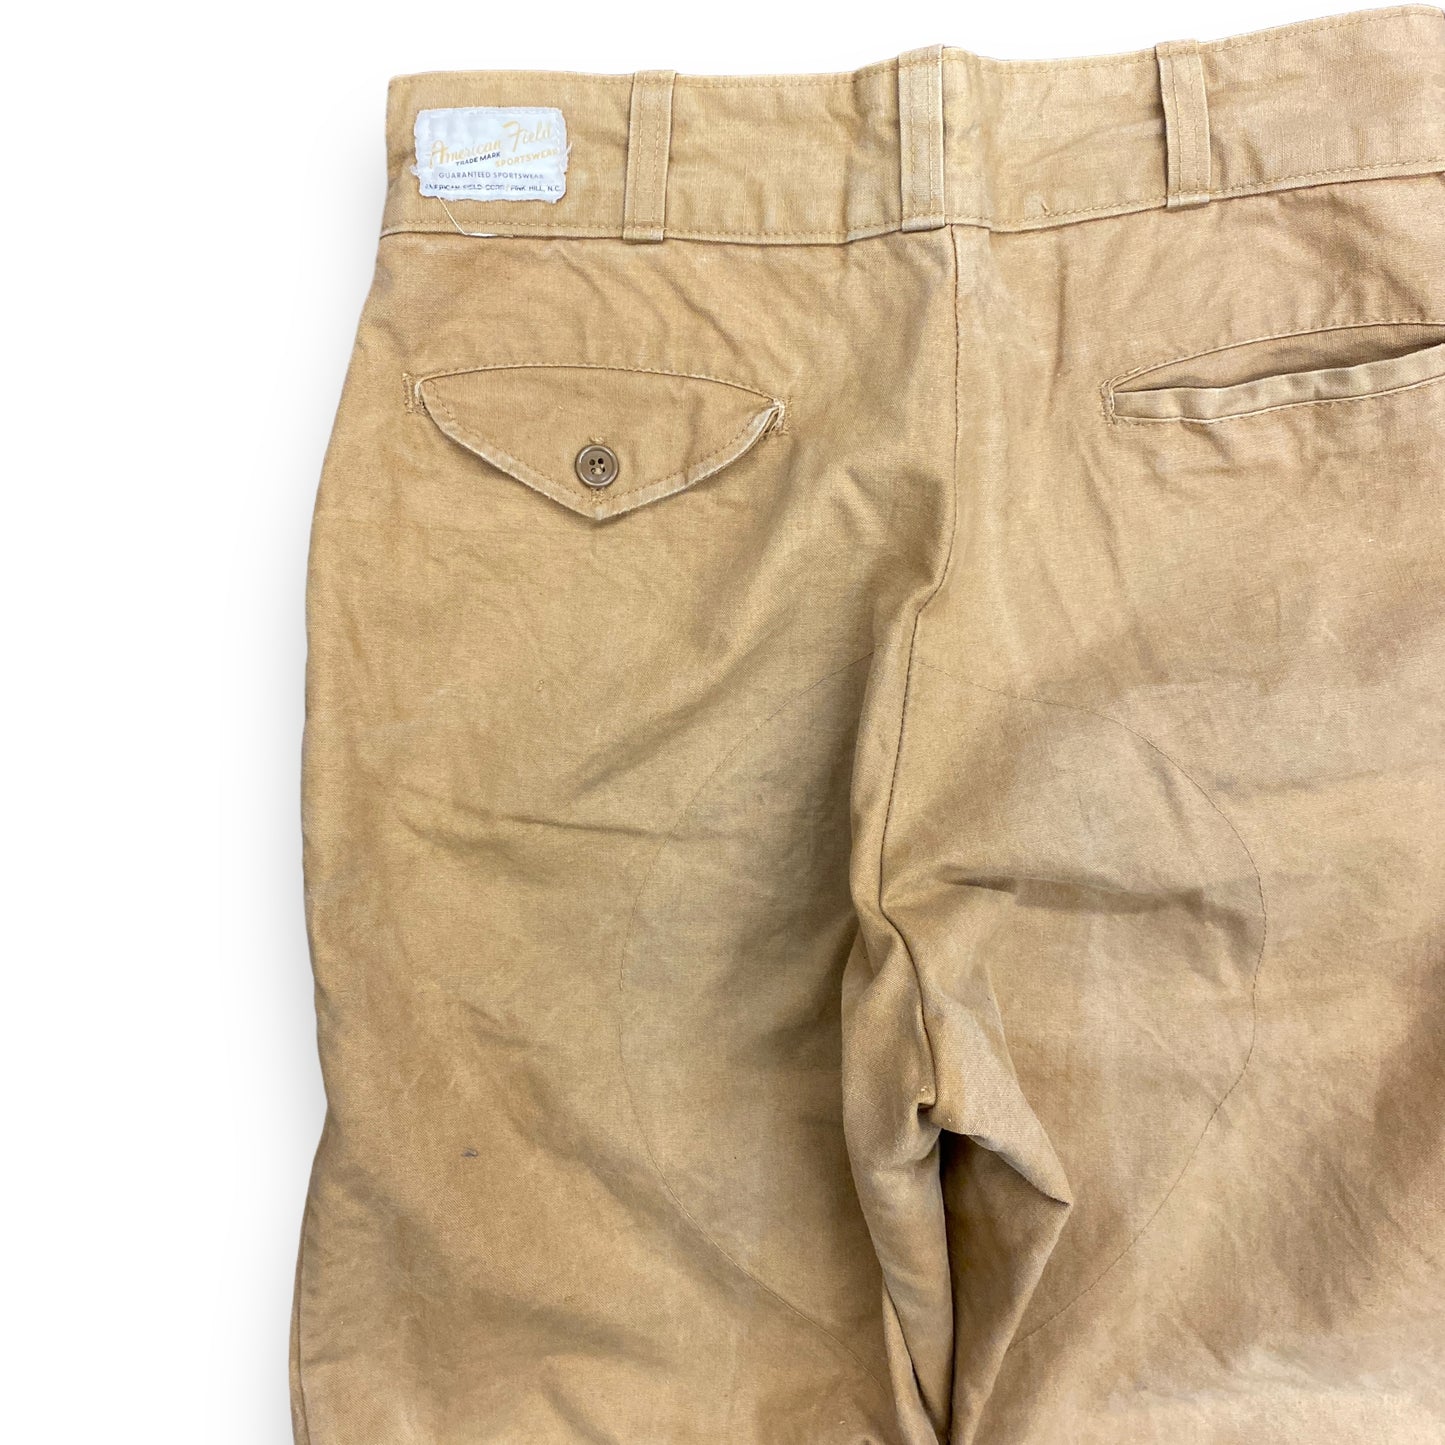 60s/70s American Field Sportswear Tan Pants - 30"x30"